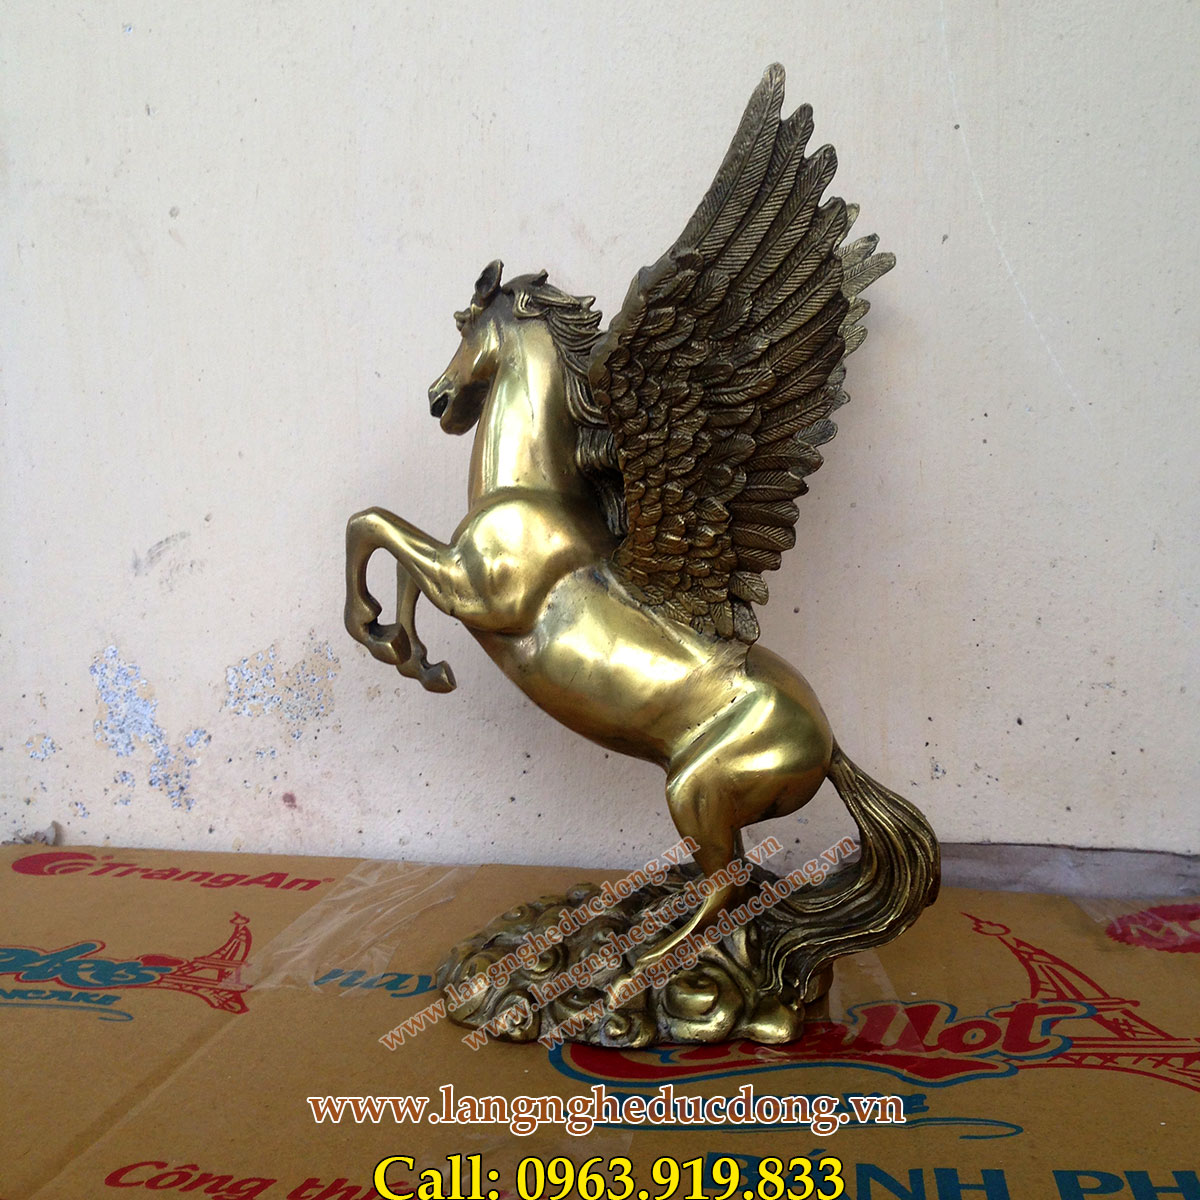 langngheducdong.vn - tượng ngựa có cánh bằng đồng cao 25cm, tượng ngựa đồng